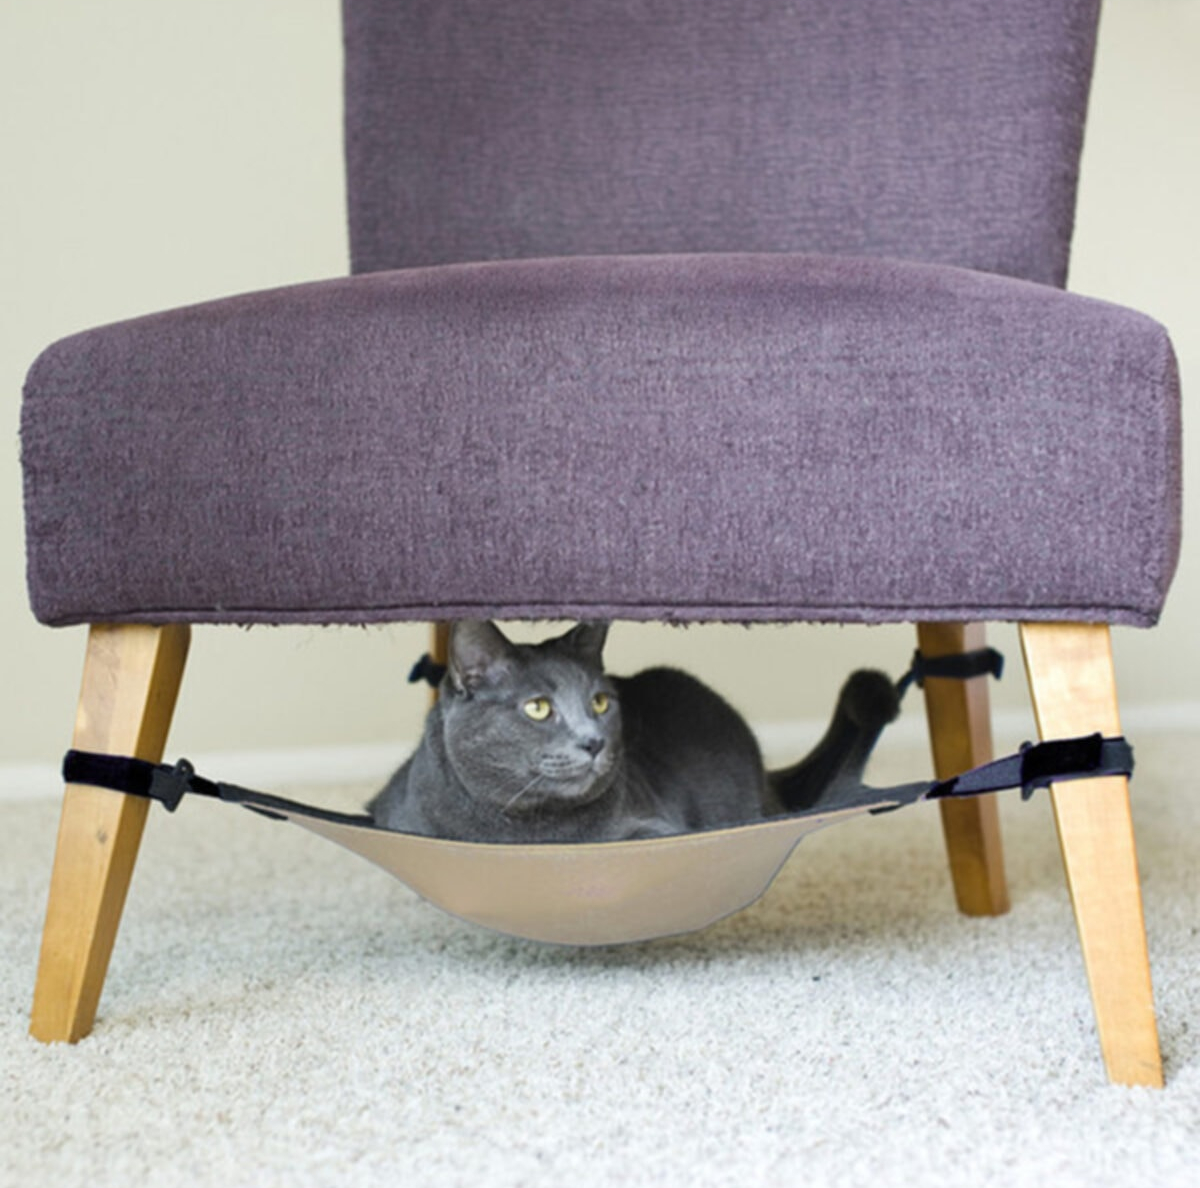 Sandalye Sehpa Altı Kedi Hamağı 50 x 50 cm